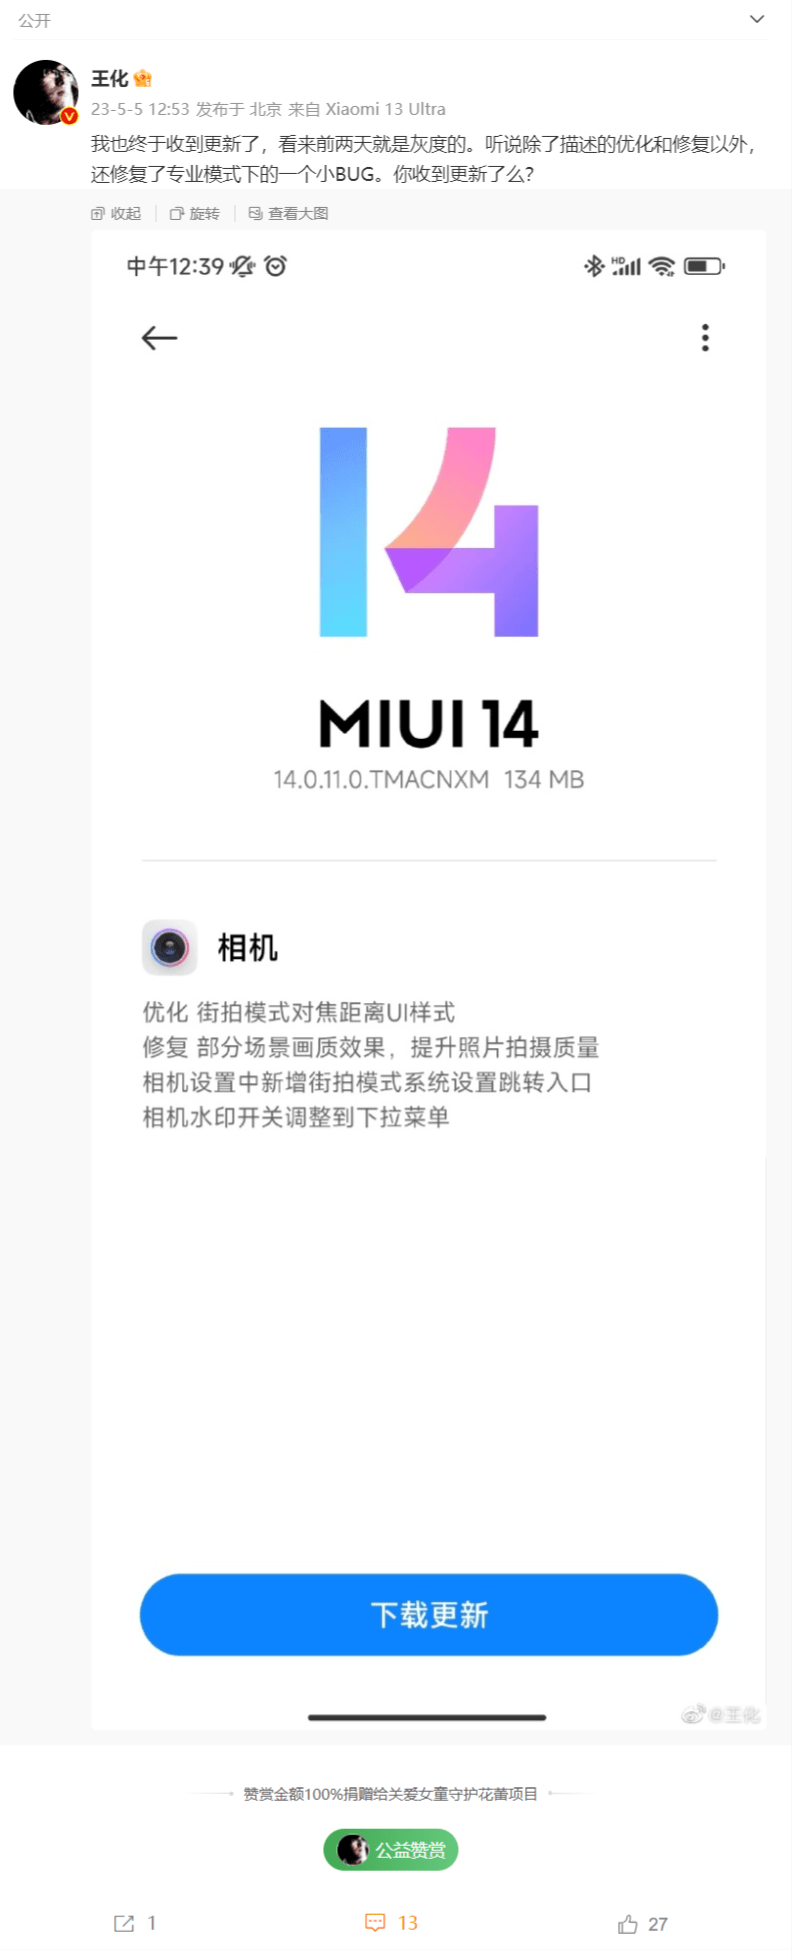 小米13 Ultra手机推送MIUI 14.0.11更新 优化街拍模式对焦距离UI样式